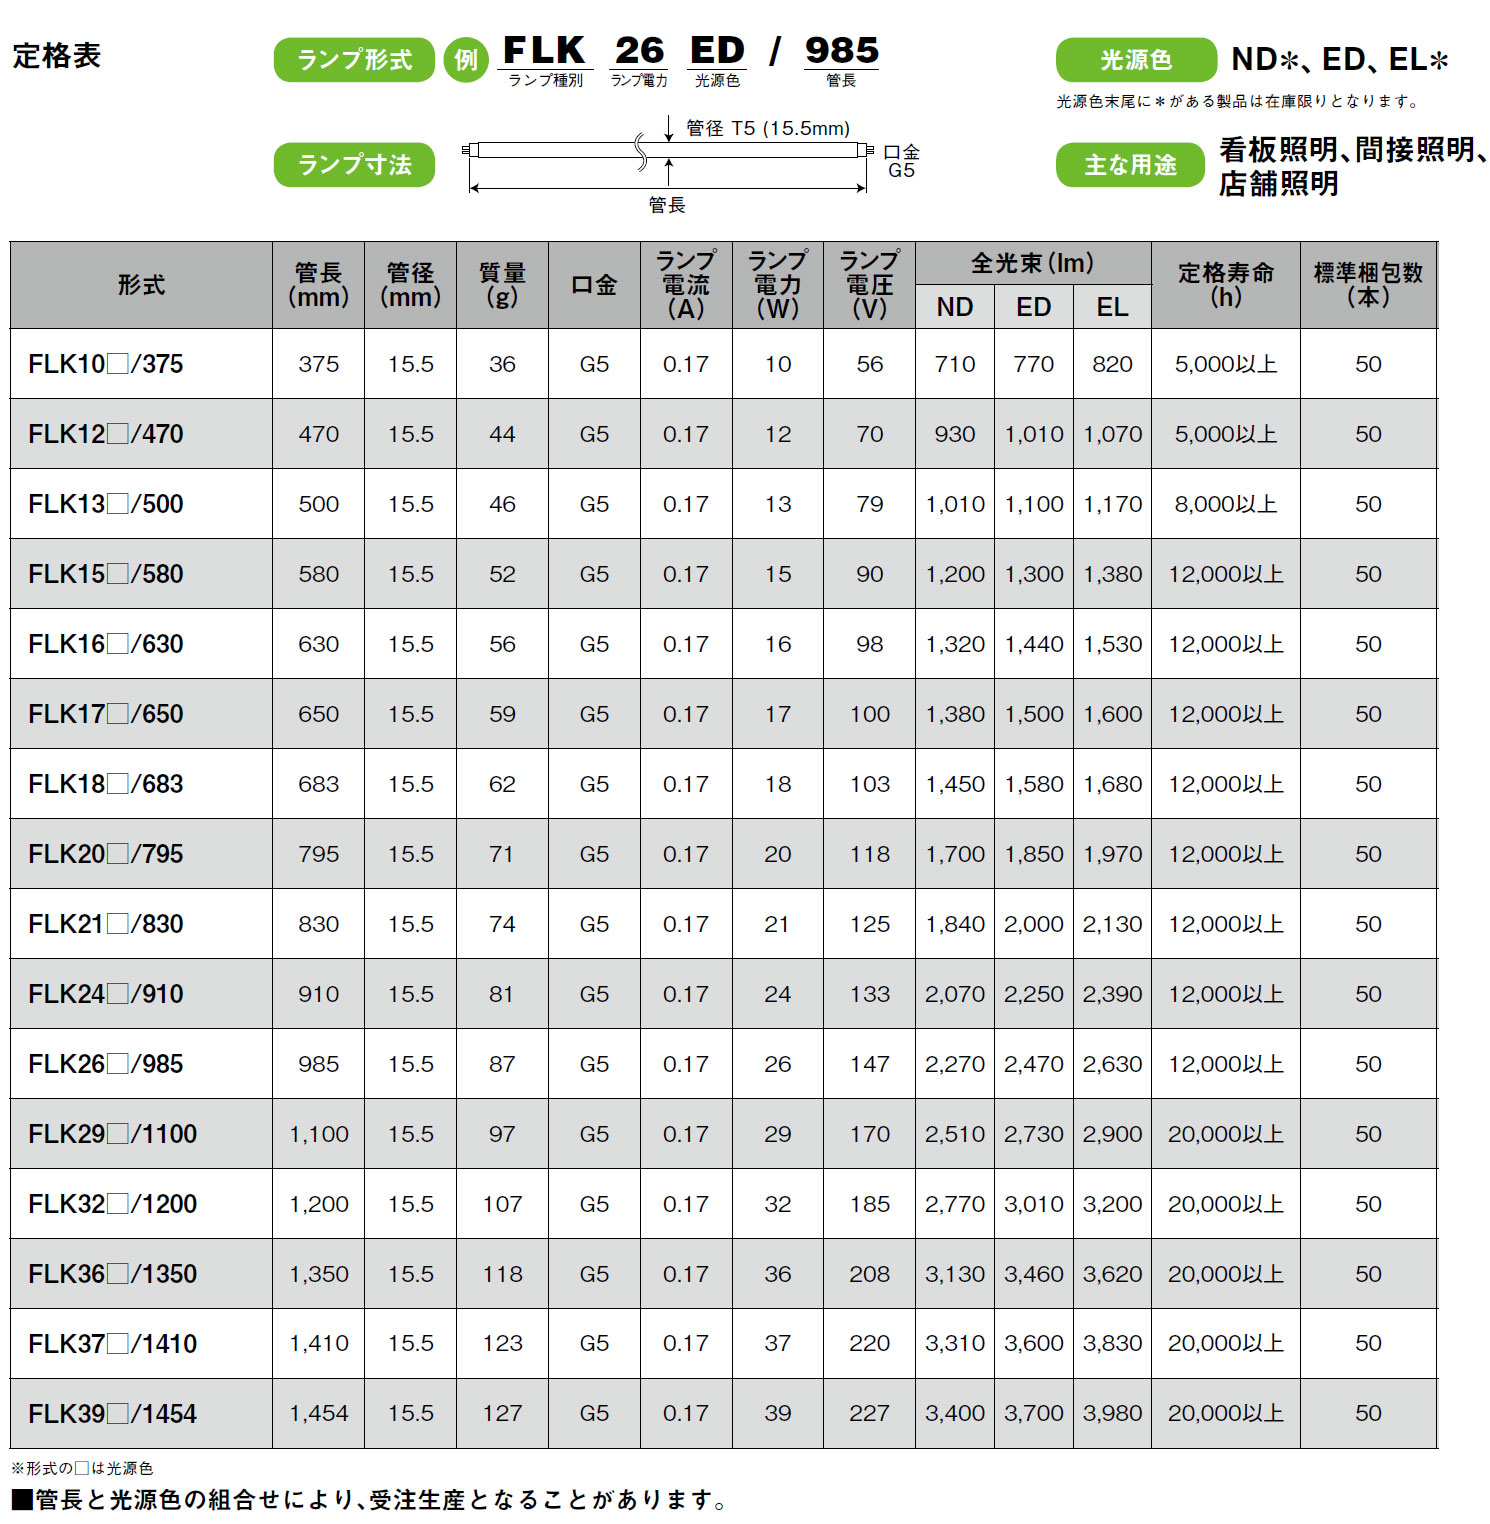 ケーライン FLK26_/985 T5ランプ,（LED電球・照明）,の通販 詳細情報,電設資材・電線・ケーブル・安全用品 ネット通販 Watanabe  電設資材 電線 ケーブル ネット 通販 Watanabe